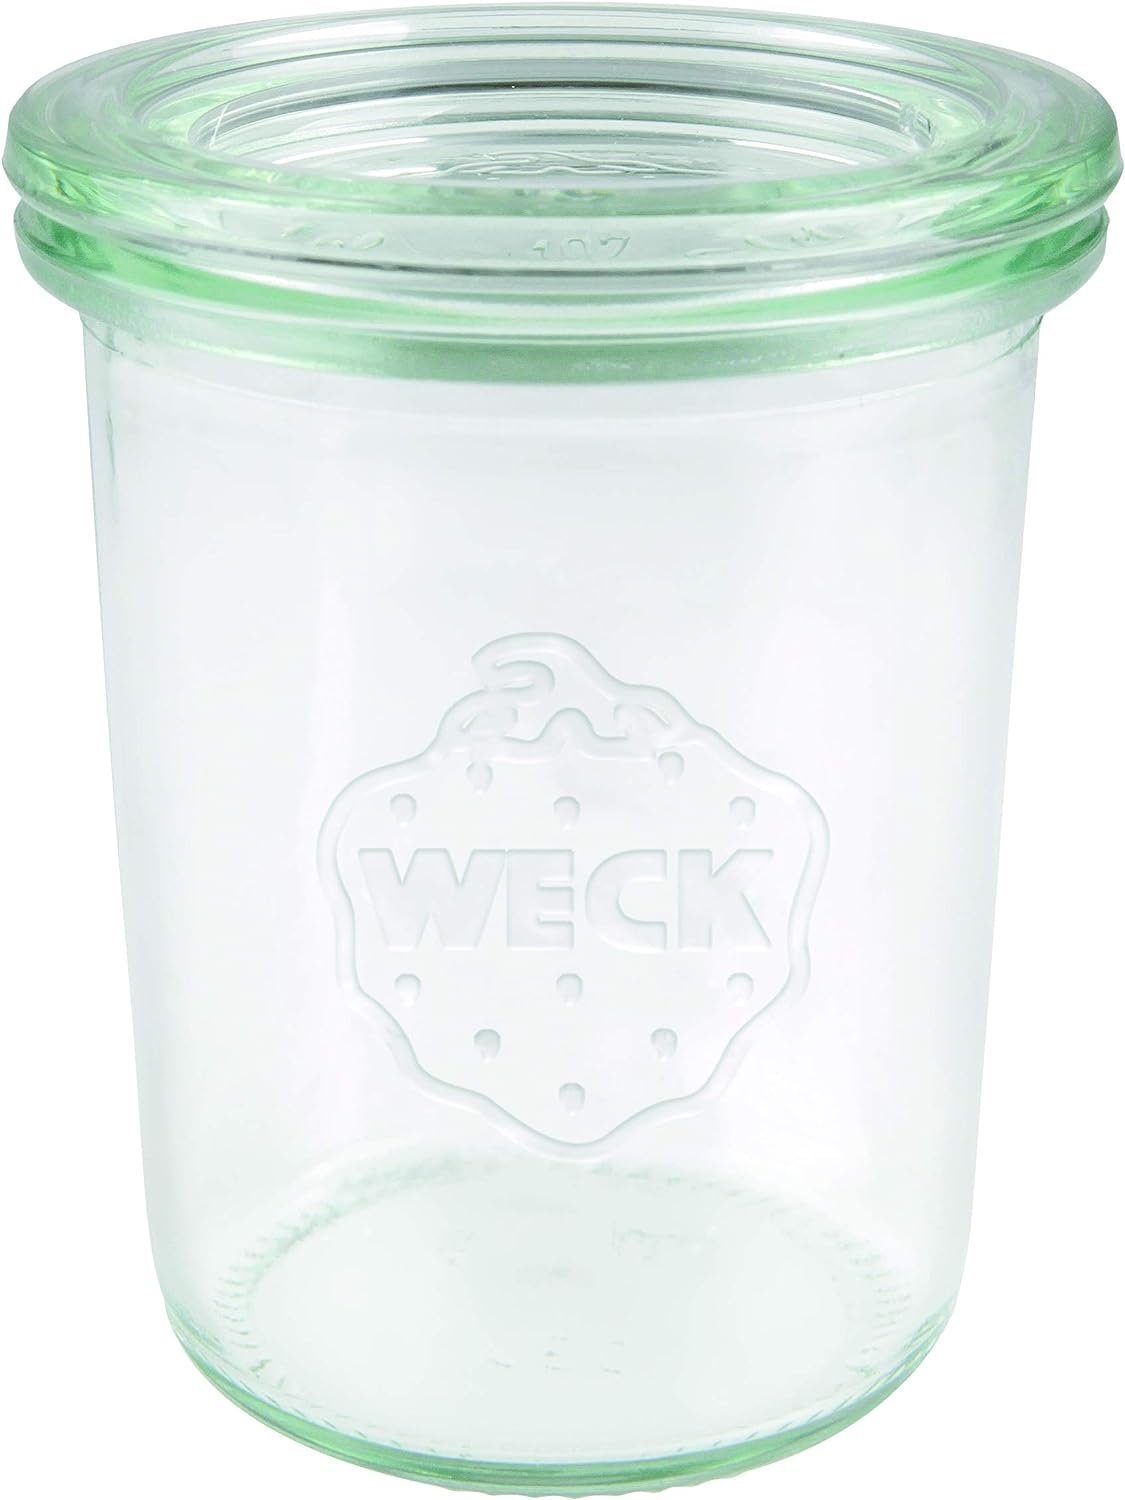 WECK Einmachglas Sturzglas Inhalt 160 ml, Einmach Glas mit Glasdeckel, 12 Stück